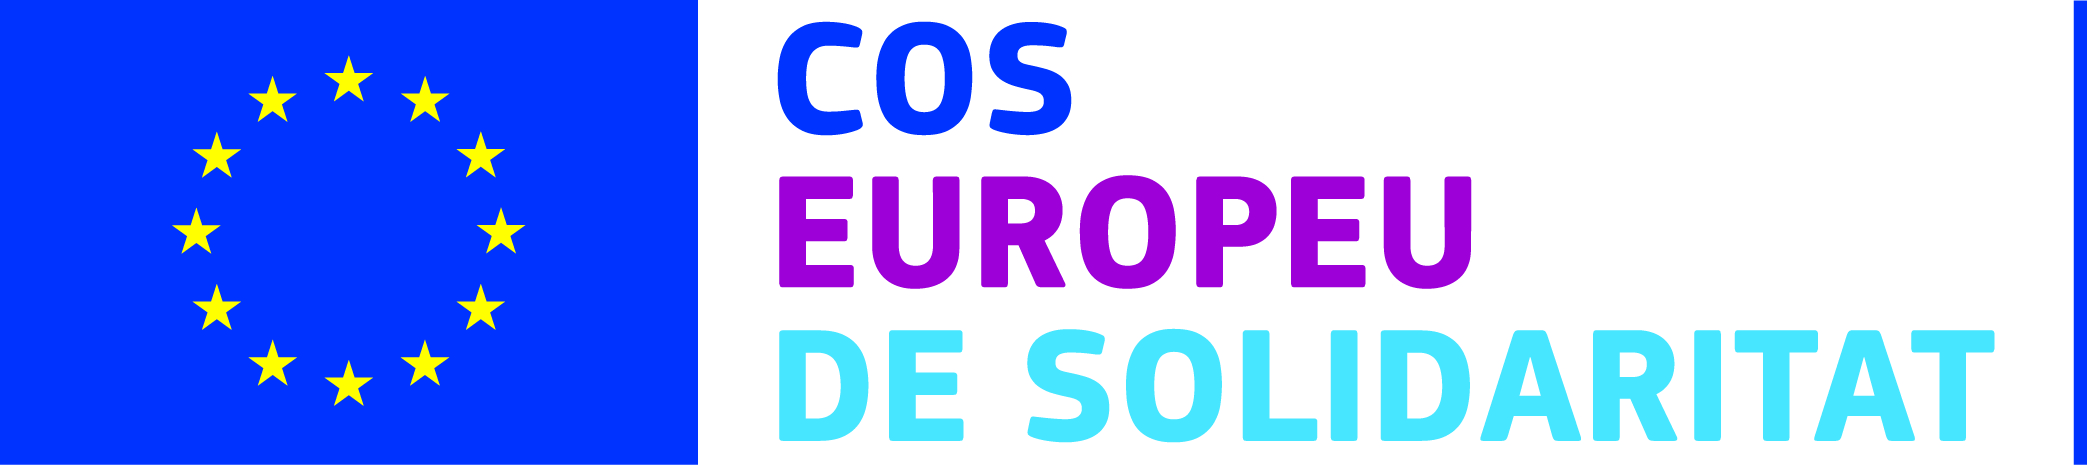 desc_european_solidarity_corps_CATALAN_CMYK.jpg